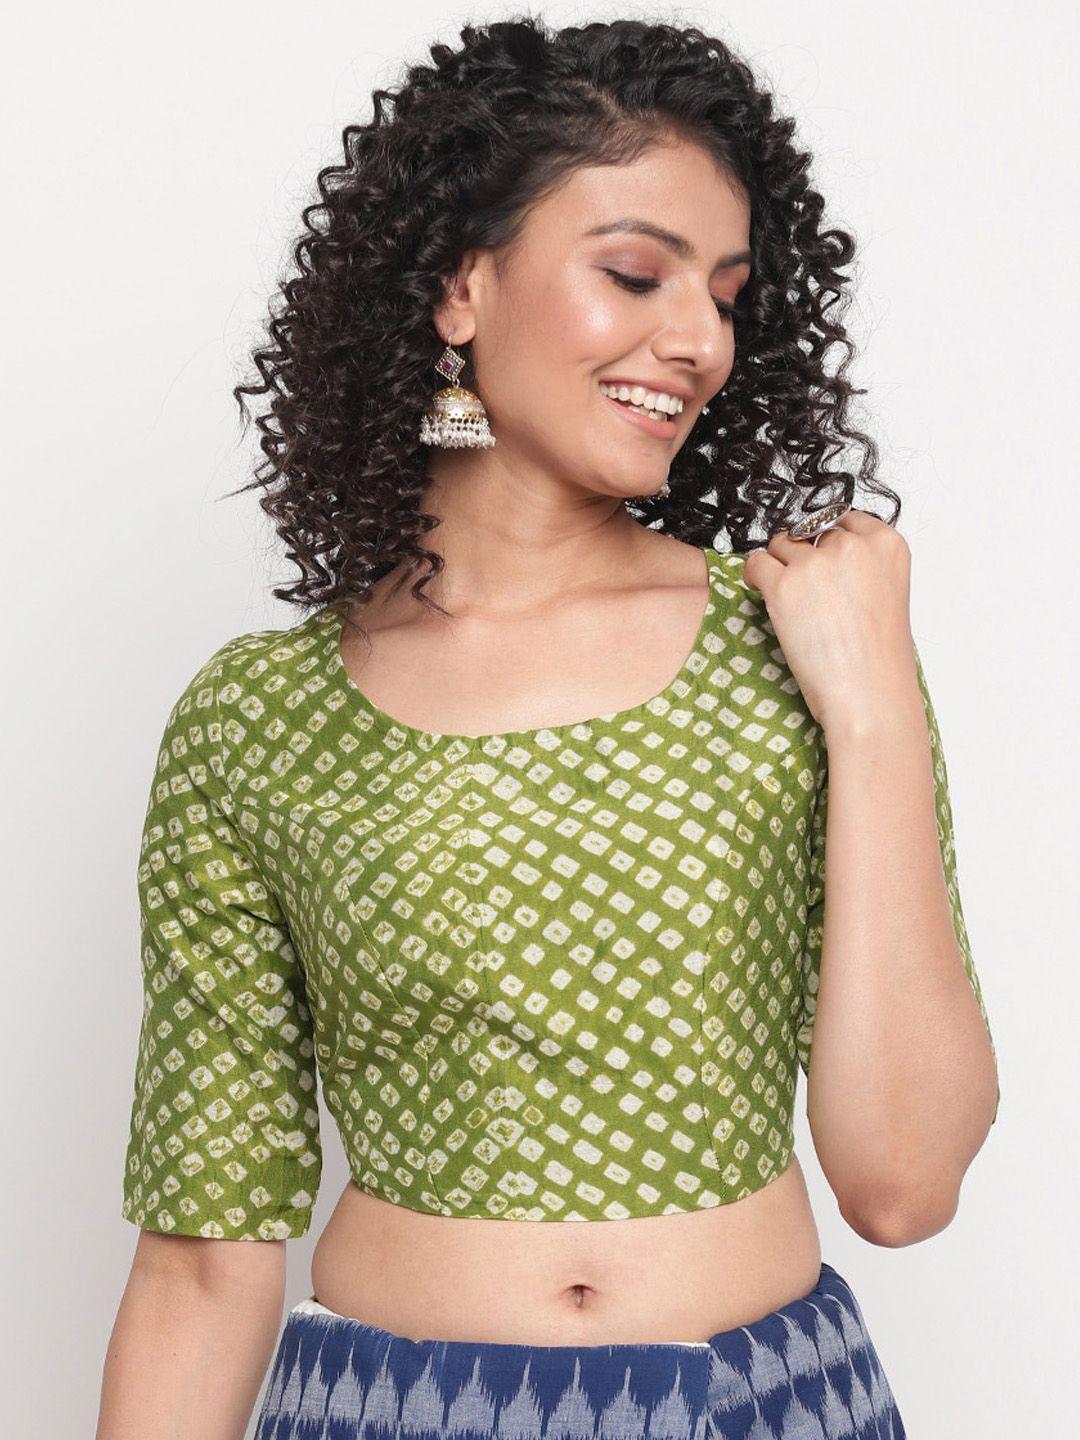 fabindia green & white bandhani printed cotton saree blouse